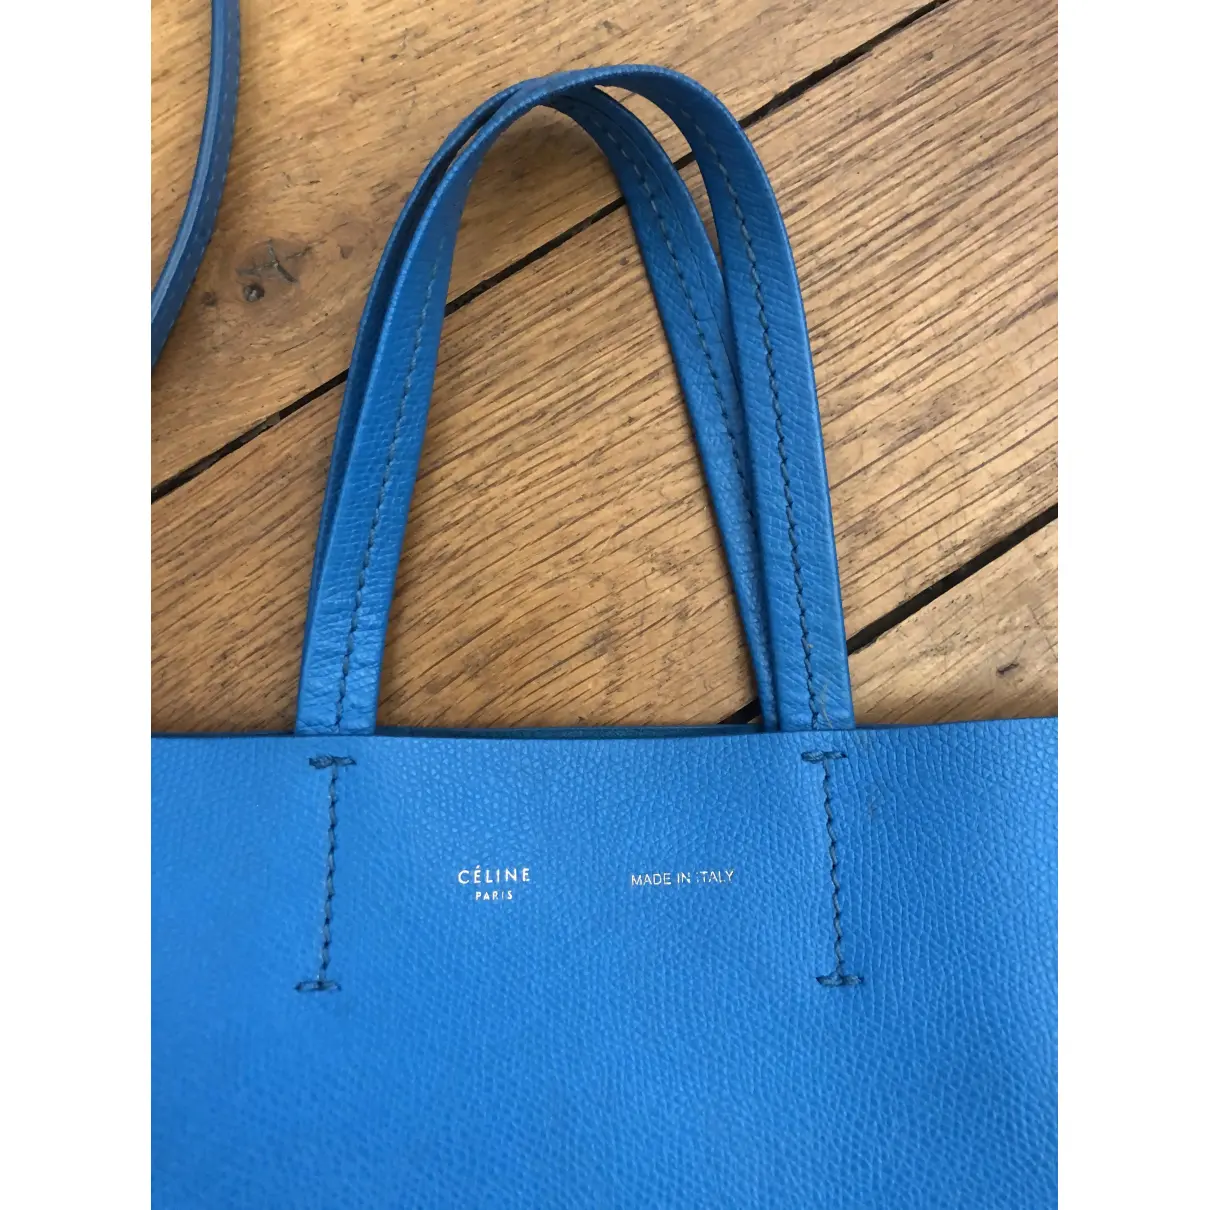 Buy Celine Cabas PM leather handbag online